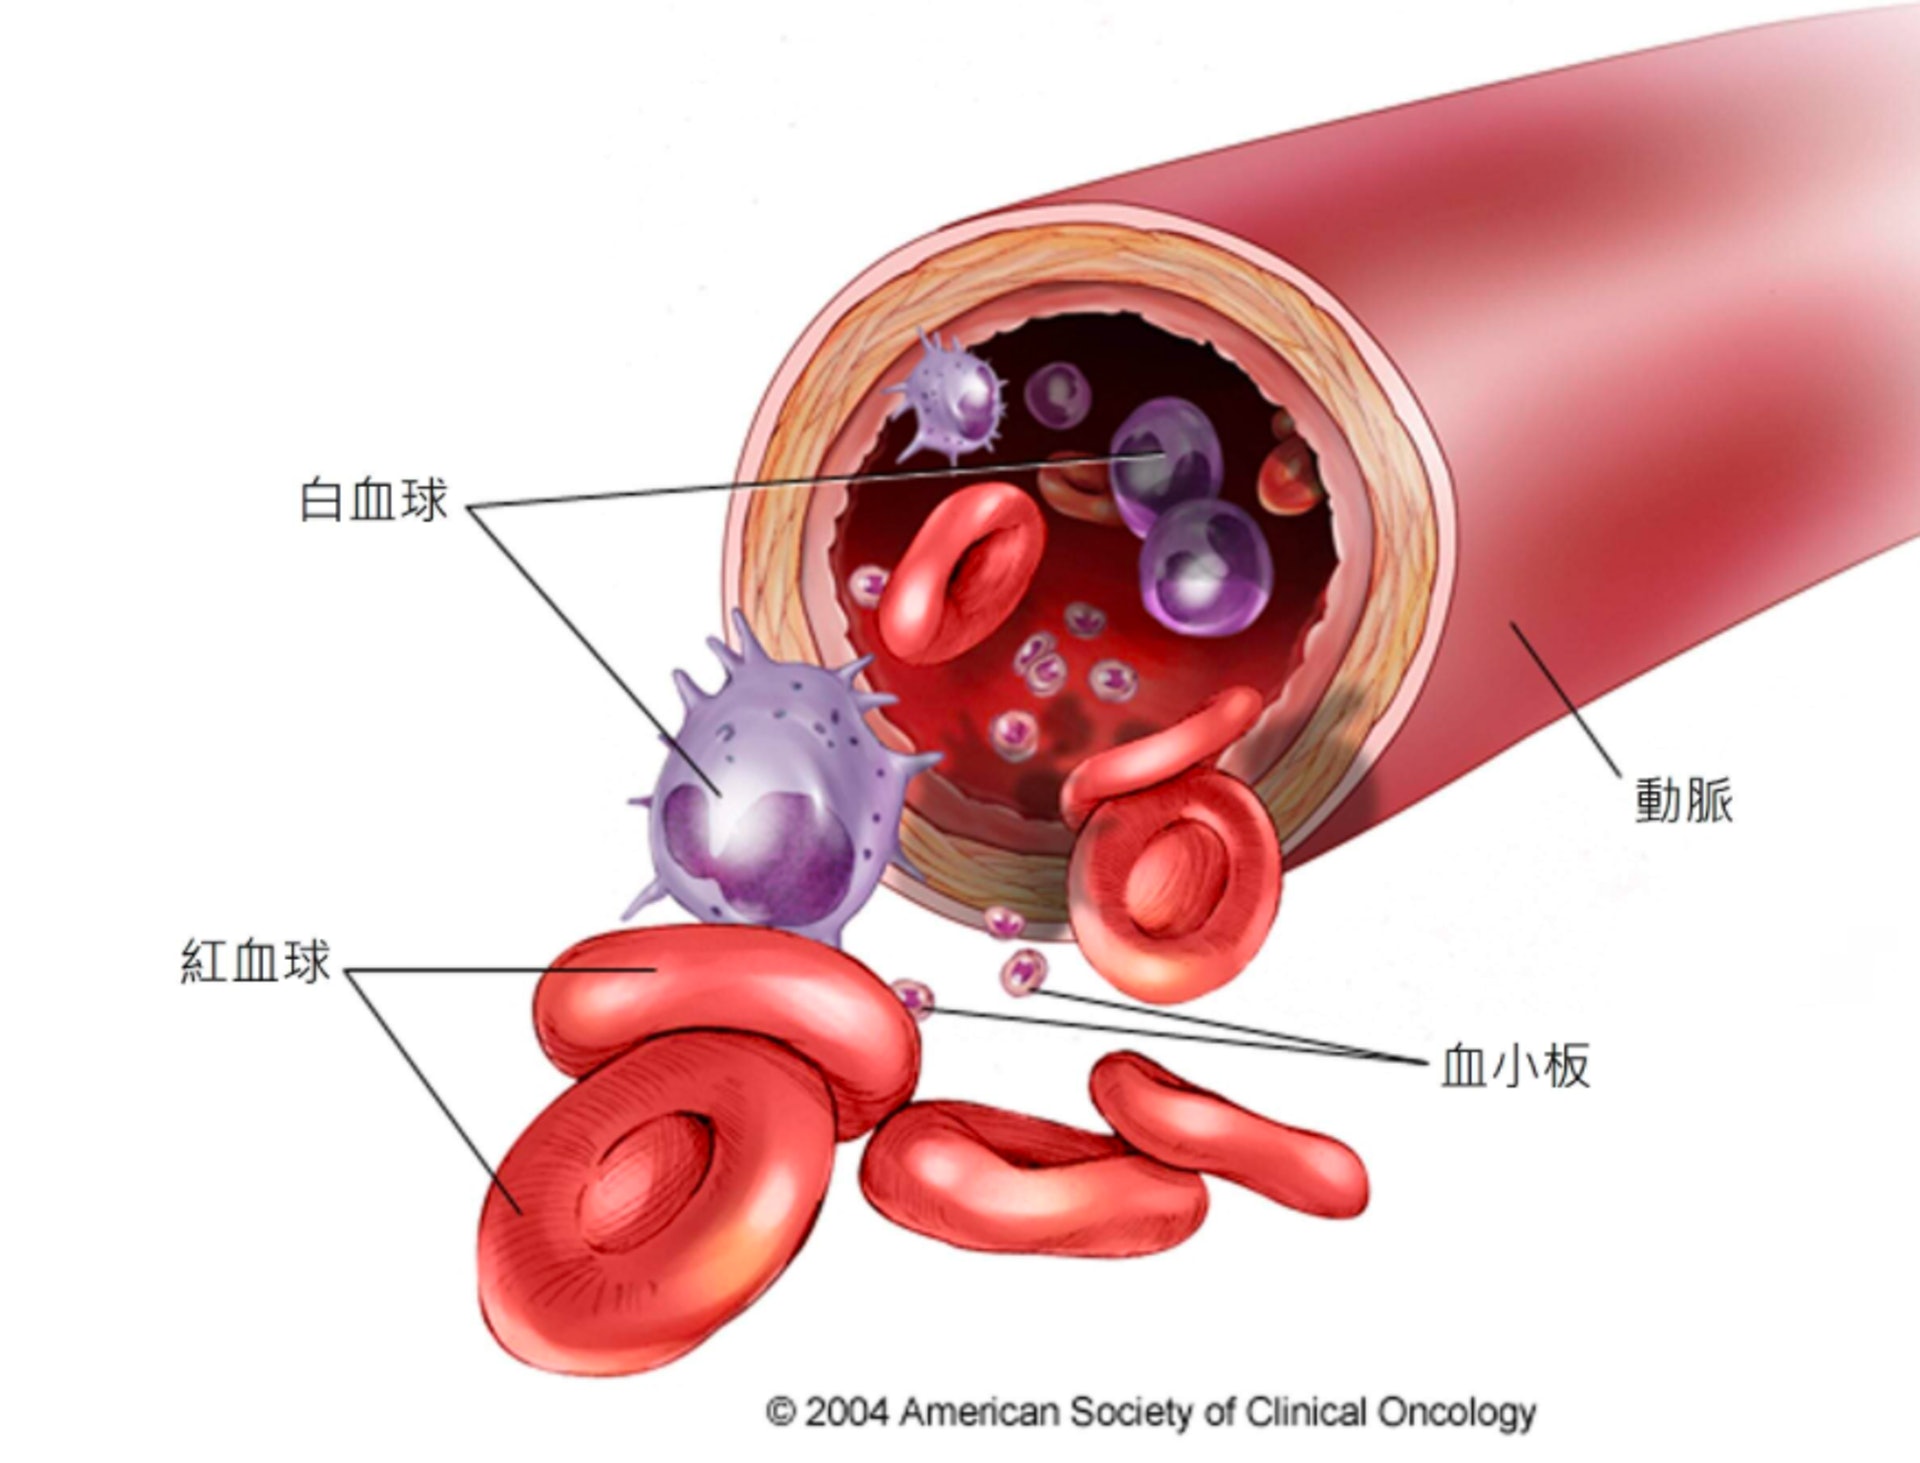 急性骨髓性白血病中，骨髓內會出現不正常的白血球、紅血球或血小板，這會令健康的白血球、紅血球和血小板減少，導致容易出現感染、貧血或出血症狀。(圖片來源：華人癌症資訊網 - 癌症圖說)